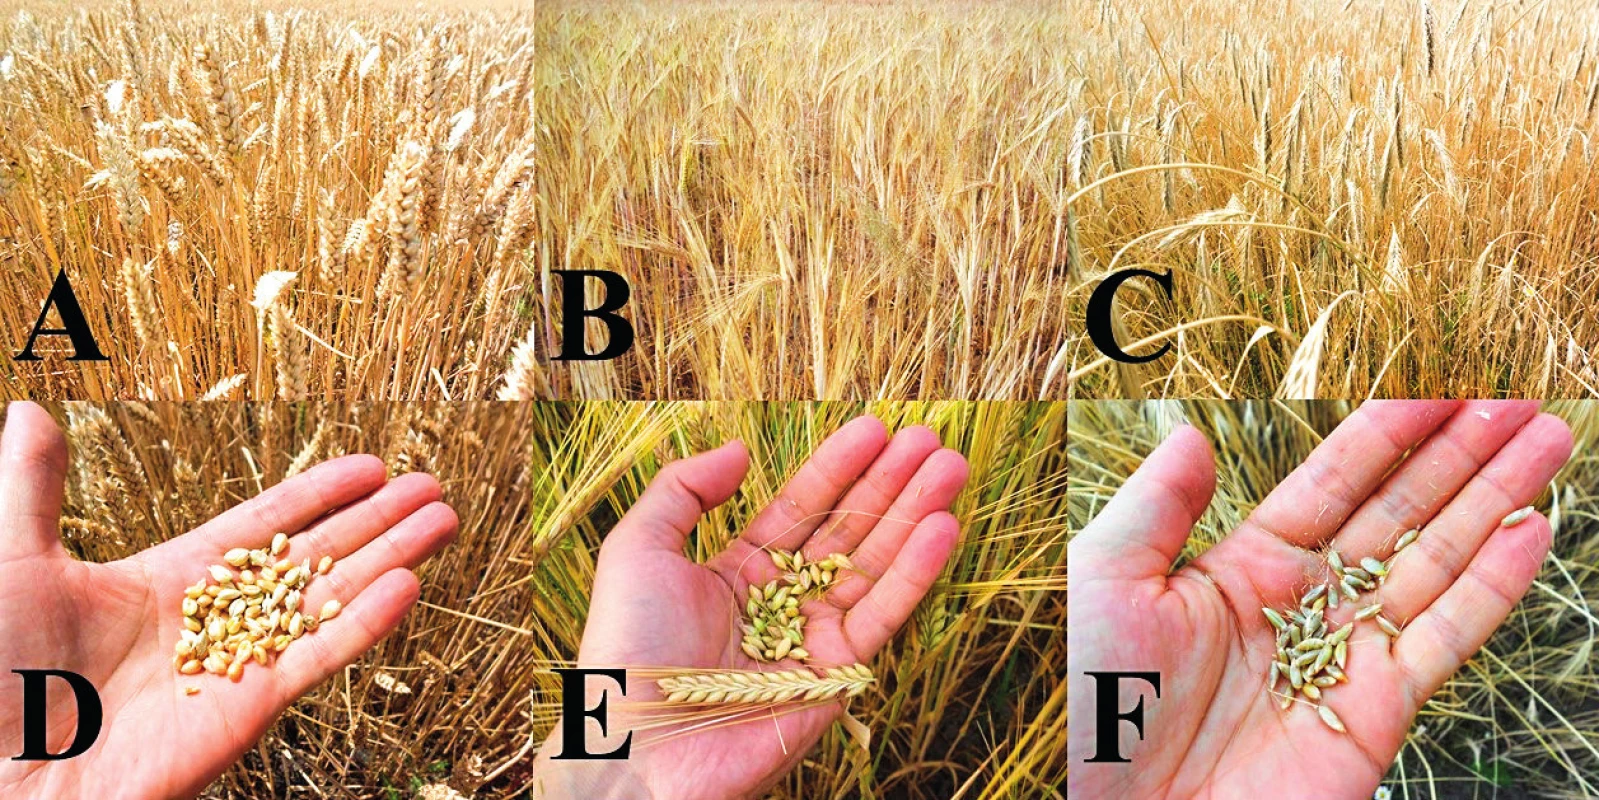 Ide o niektoré obilniny, ktoré sú nevhodné pre výživu celiatikov
Pohľad na &lt;b&gt;A&lt;/b&gt;: pšeničné, &lt;b&gt;B&lt;/b&gt;: jačmenné a &lt;b&gt;C&lt;/b&gt;: ražné pole aj s detailnejším záberom na &lt;b&gt;D&lt;/b&gt;: pšeničné, &lt;b&gt;E&lt;/b&gt;: jačmenné a &lt;b&gt;F&lt;/b&gt;: ražné zrná.